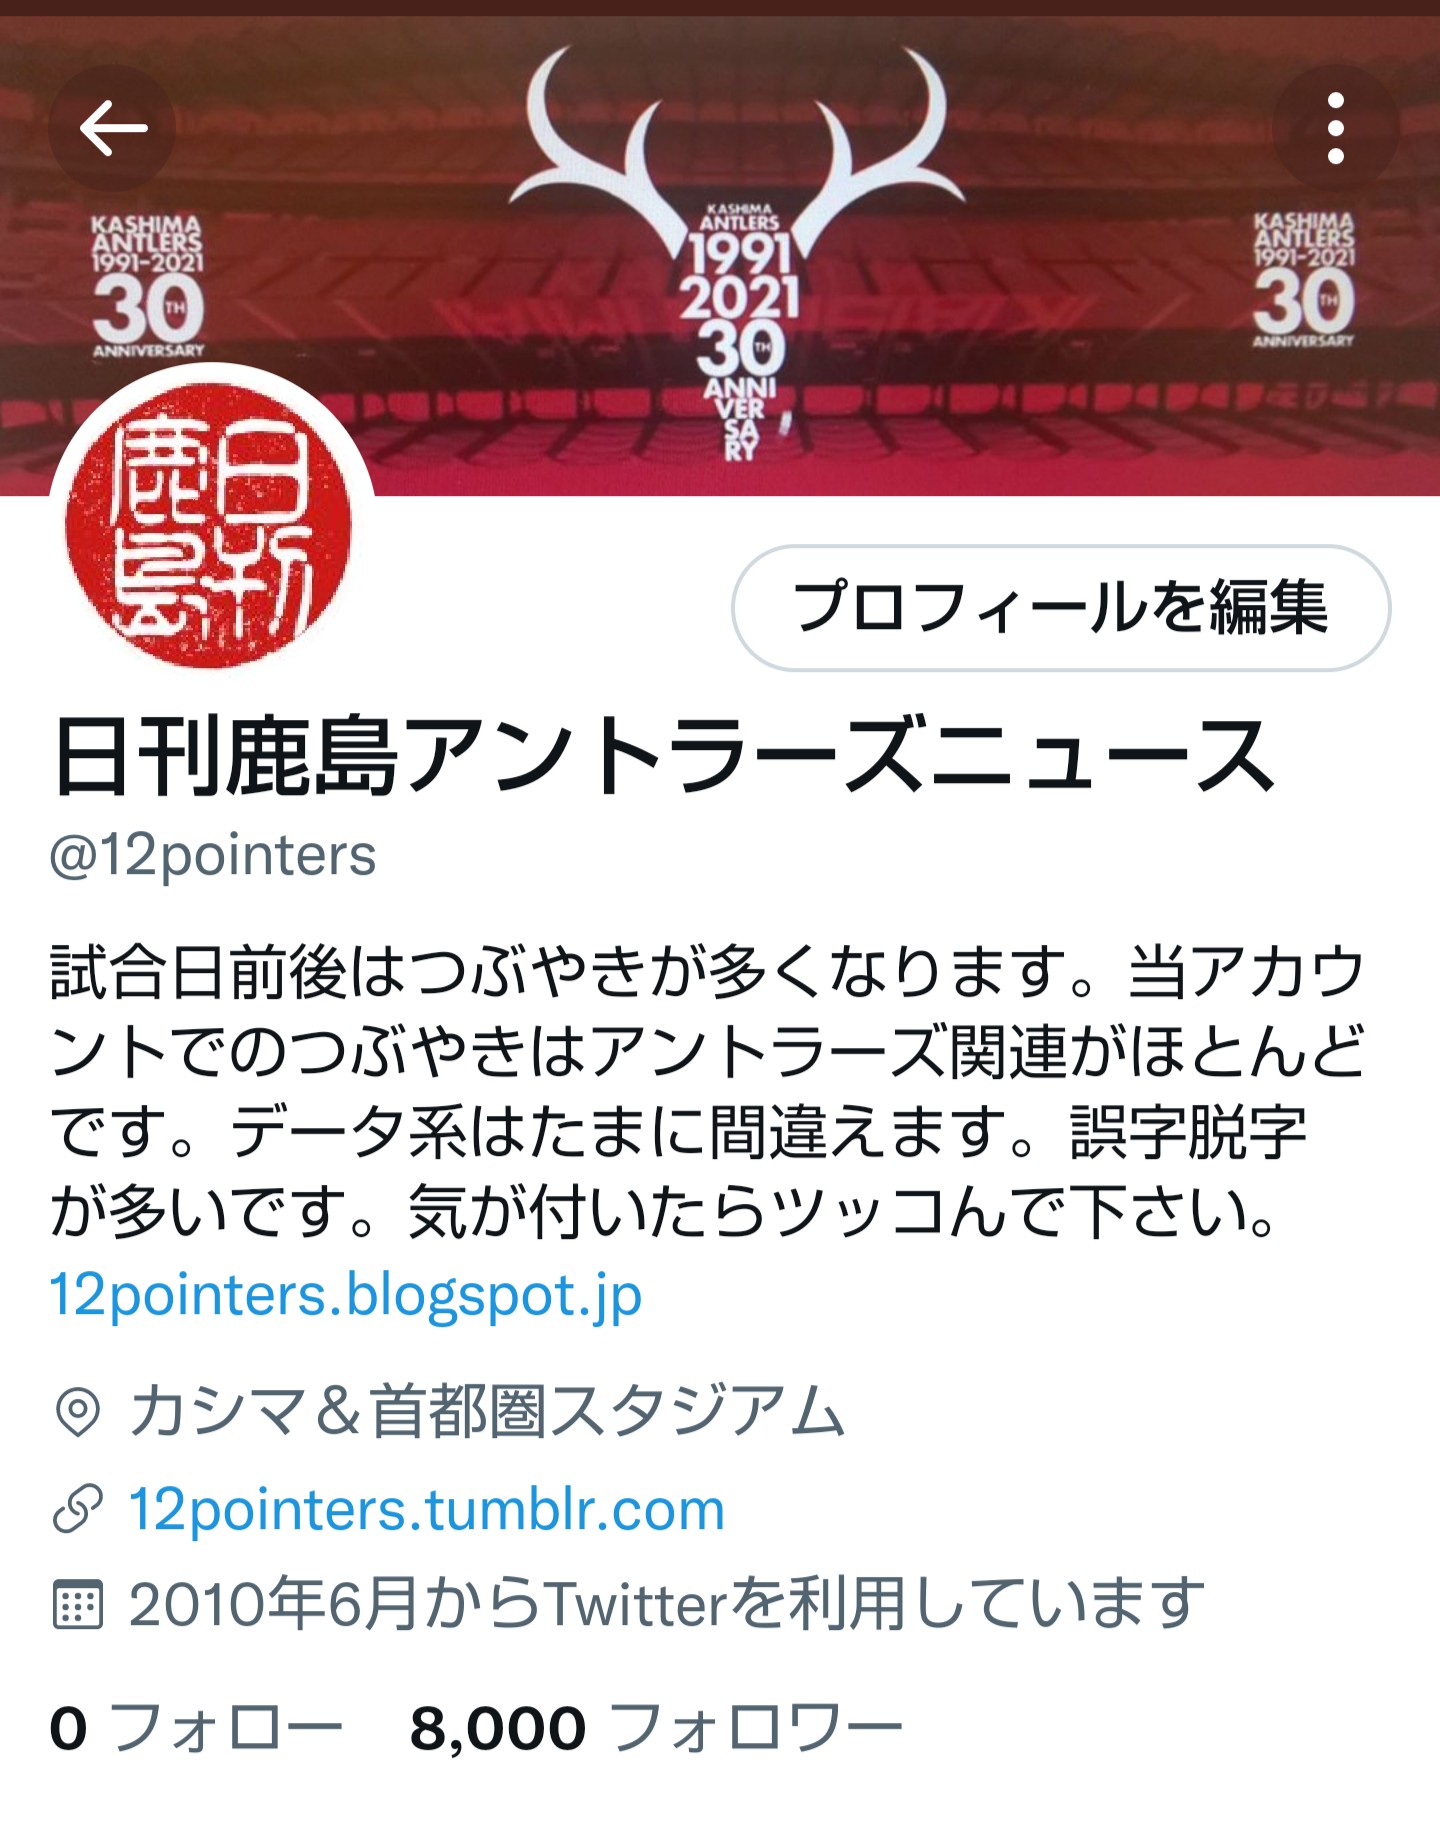 日刊鹿島アントラーズニュース 12pointers Twitter